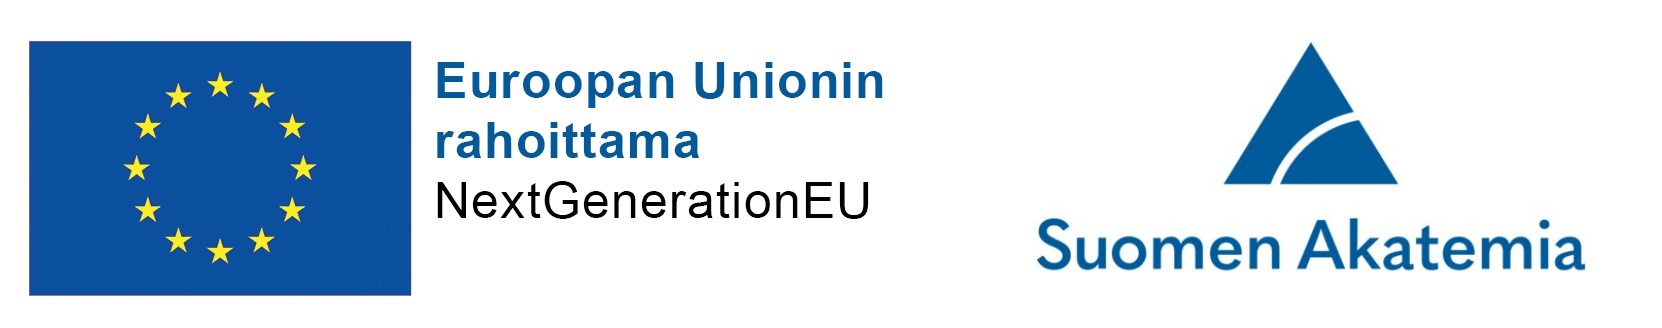 Euroopan Unionin logo ja teksti: Euroopan Unioinin rahoittama, NextGenerationEU sekä Suomen Akatemia logo ja teksti. 